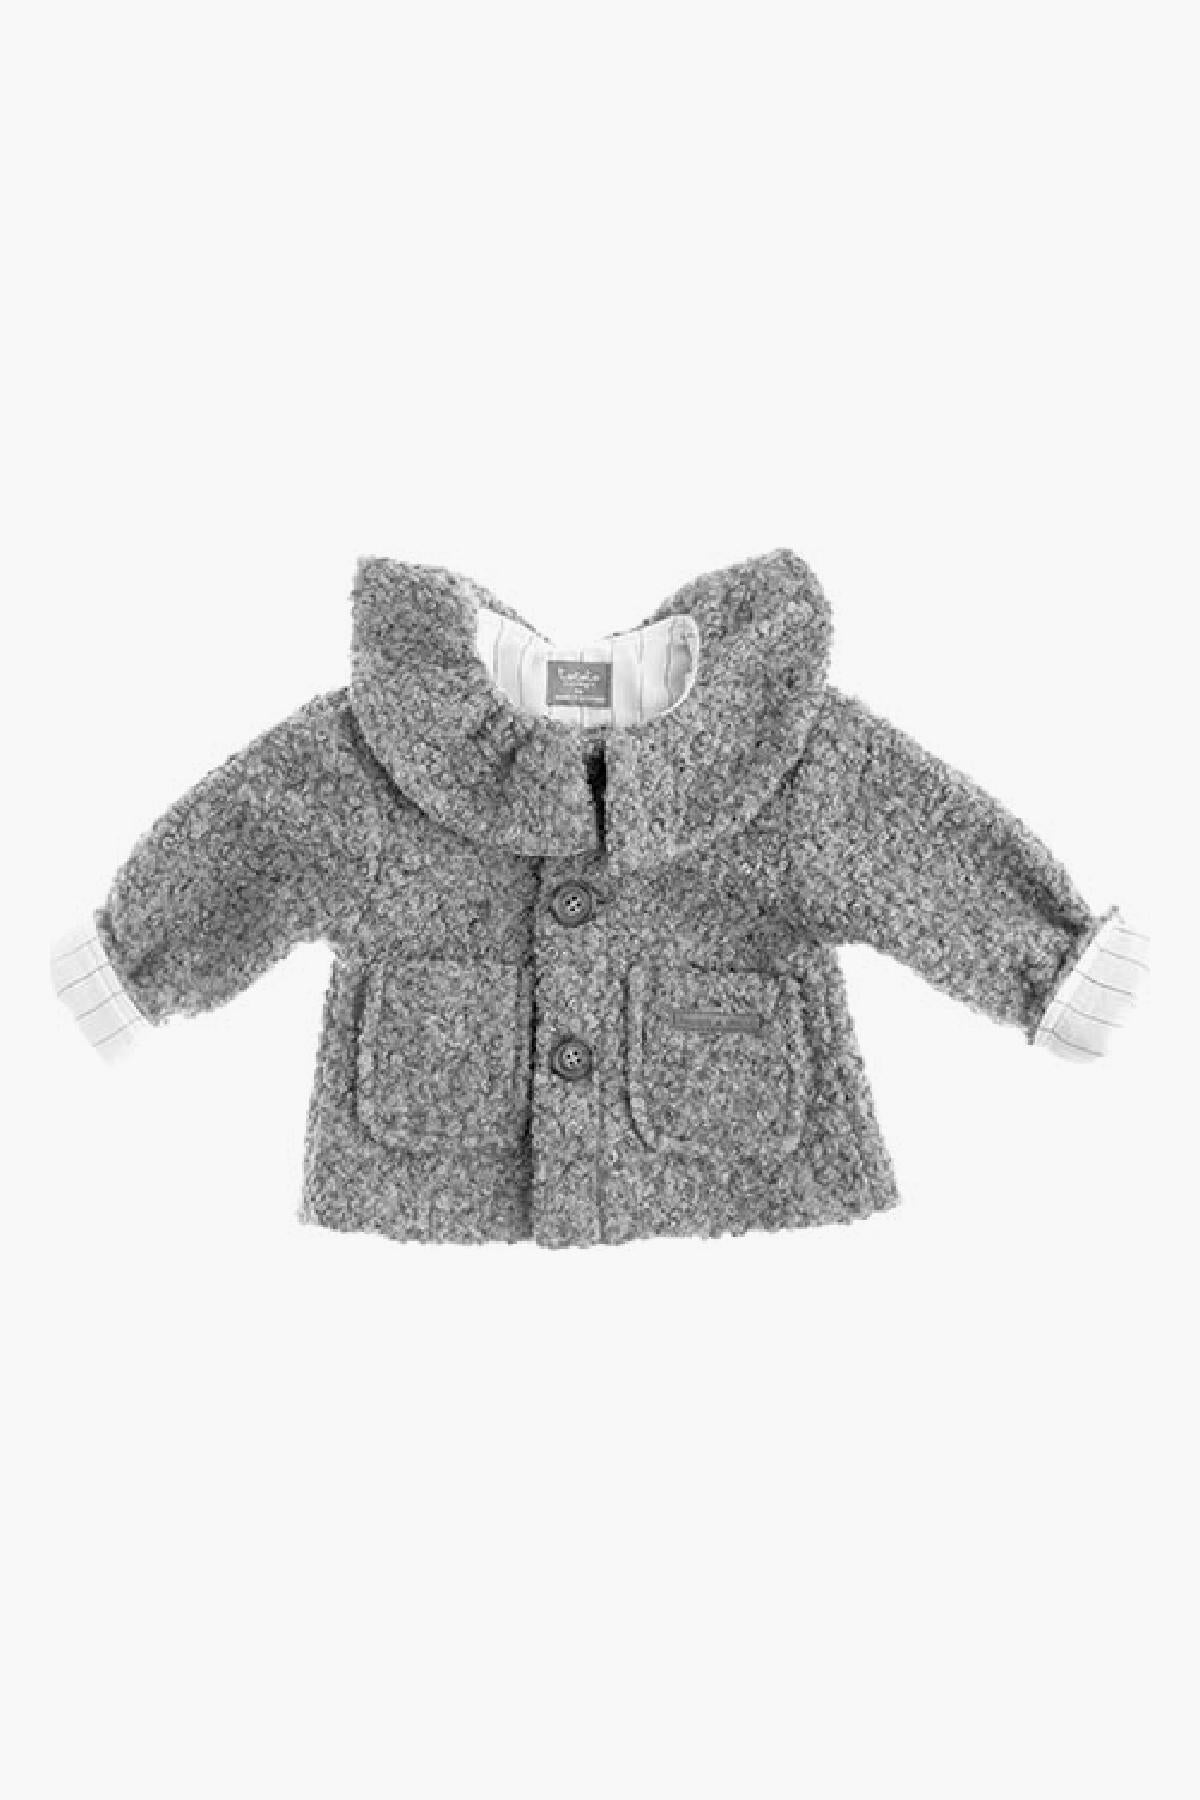 Tocoto Vintage Bouclé Baby Coat – Mini Ruby